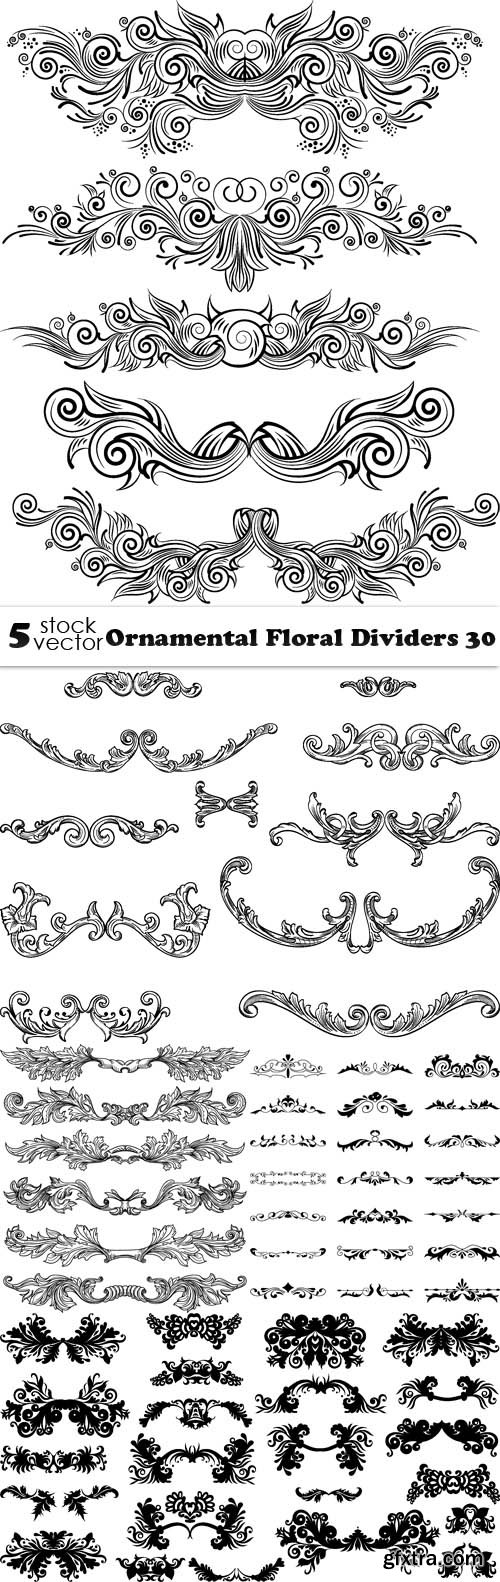 Vectors - Ornamental Floral Dividers 30